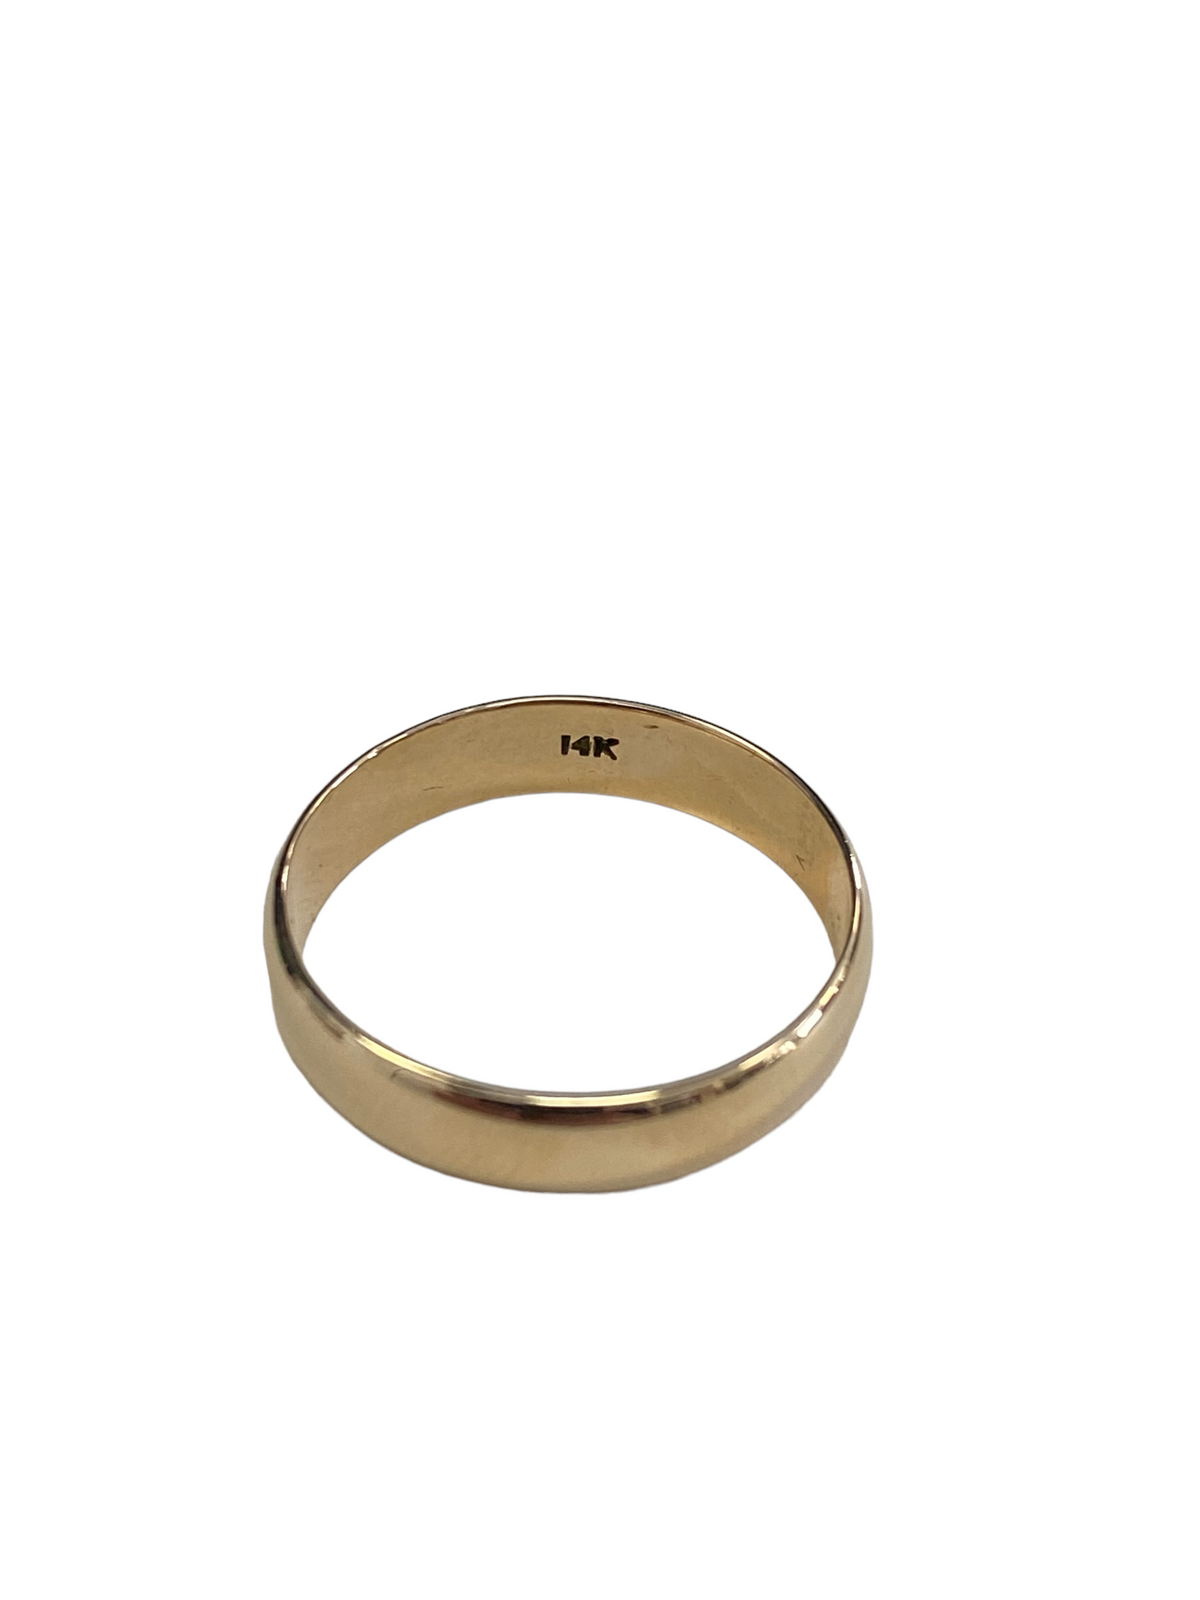 14K Yellow Gold Wedding Band Size 10.5(US) Unisex Ring